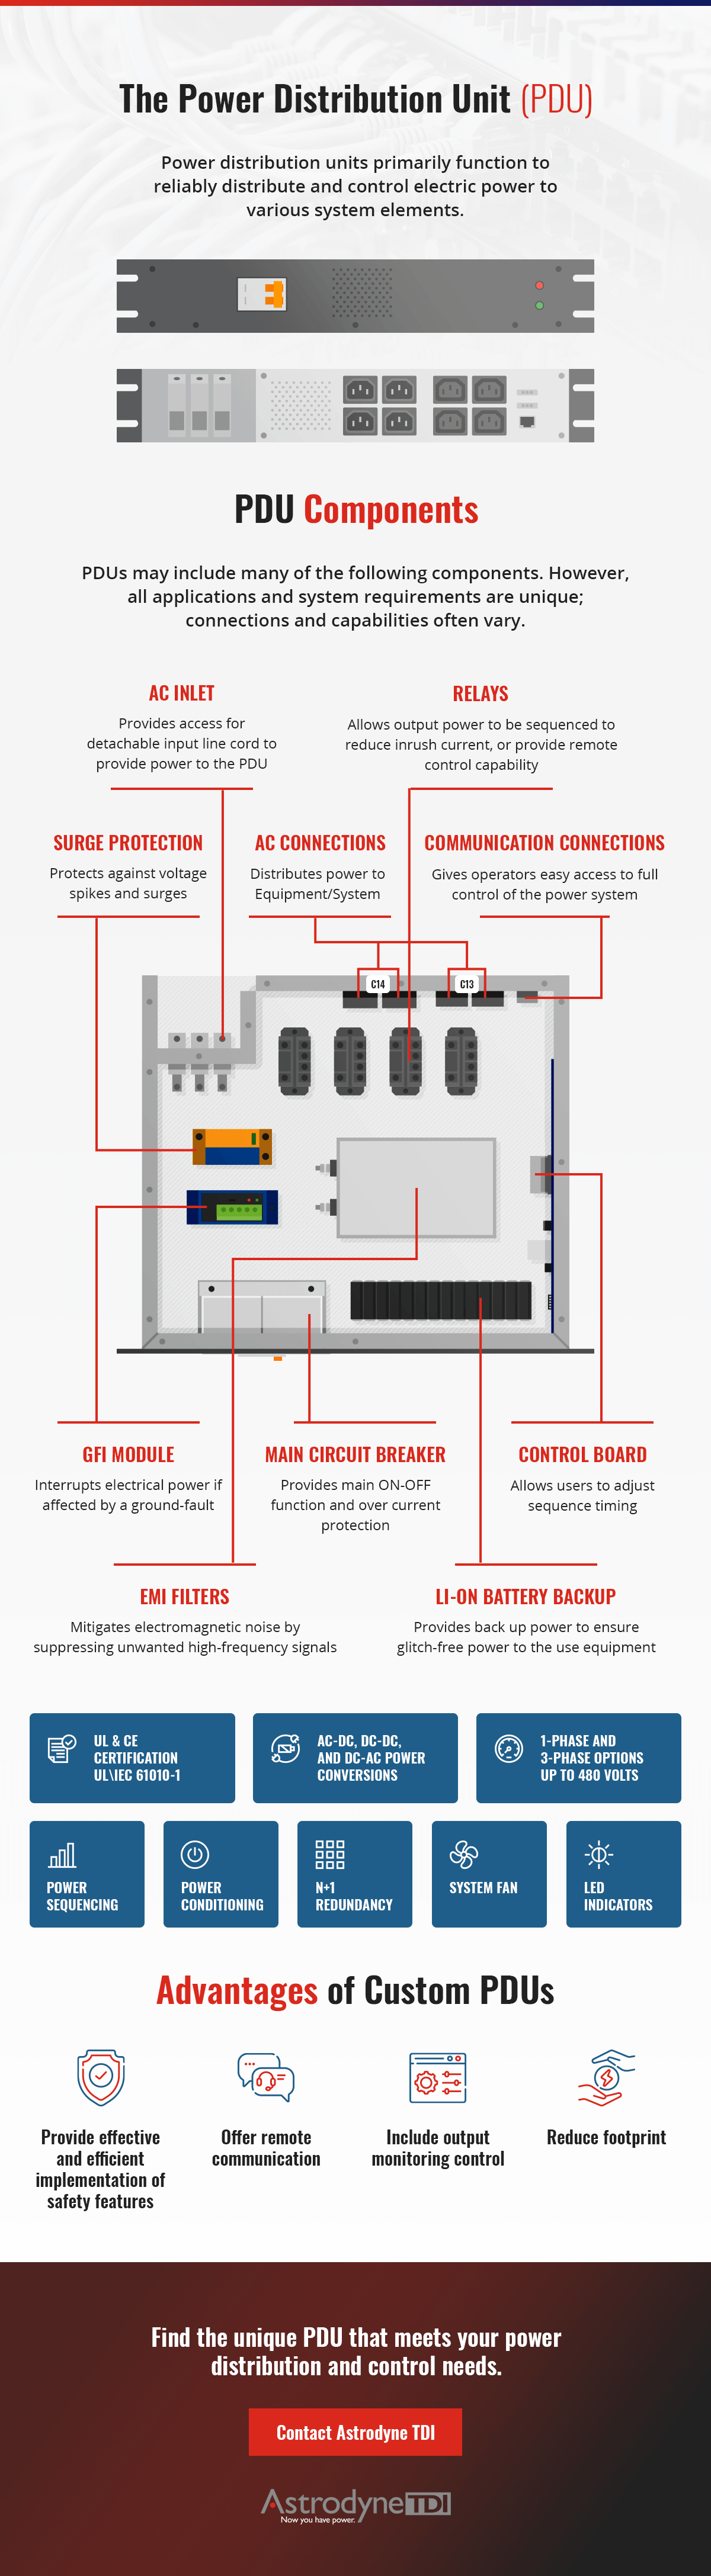 Power Distribution Unit Components